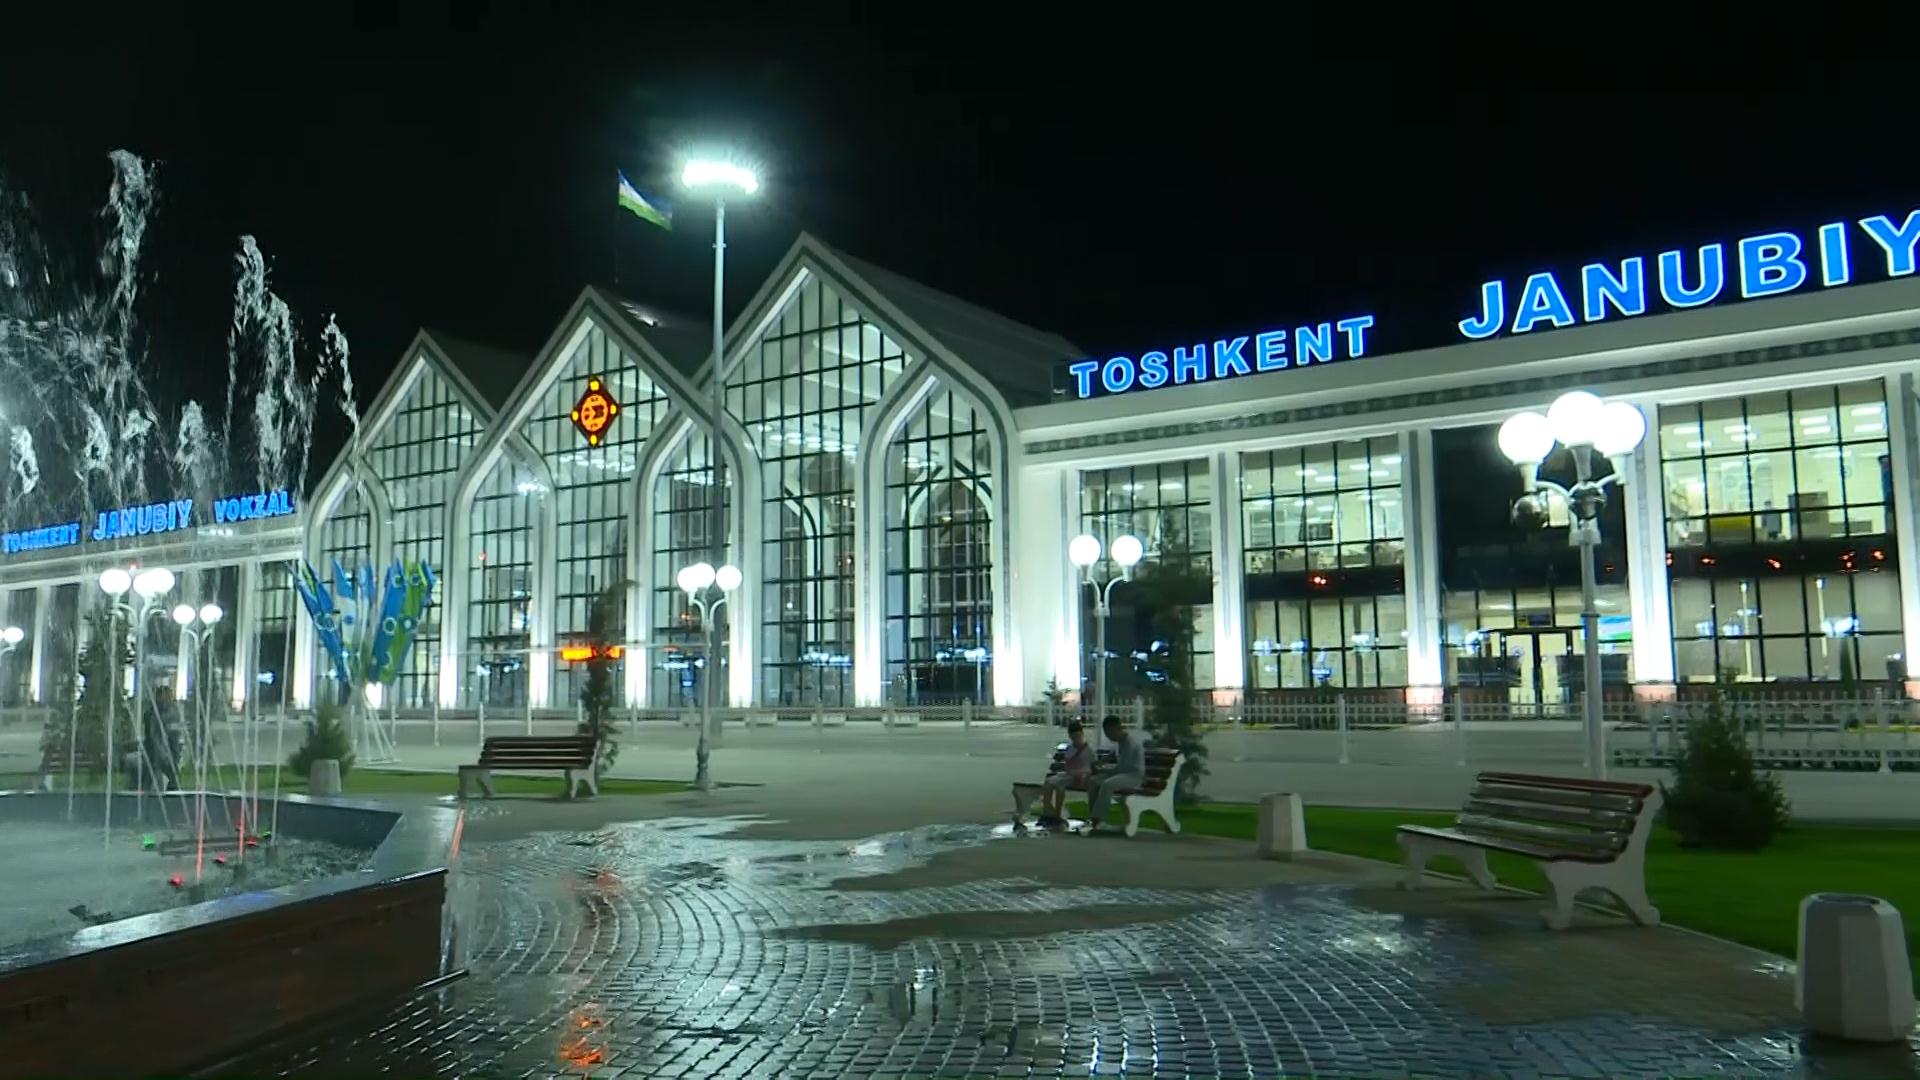 Ташкент вокзал